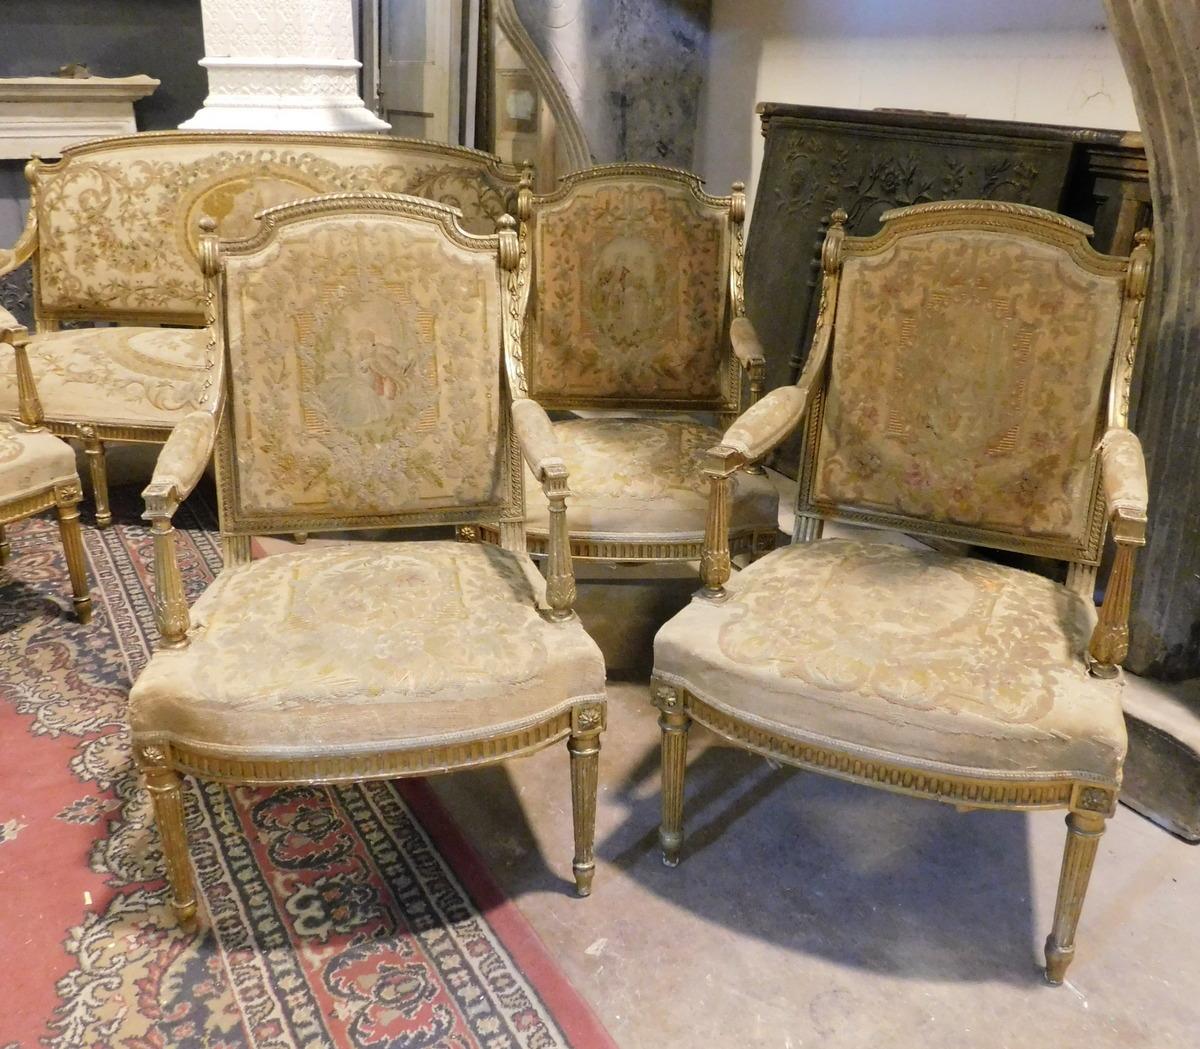 Vintage sièges de salon doré, ensemble composé d'un canapé et quatre fauteuils, encore tissu d'origine et en bon état, construit au début du 20e siècle, produit par la fabrication en Italie.
le canapé mesure cm l 165 x h 100 (h assise cm 45) x p